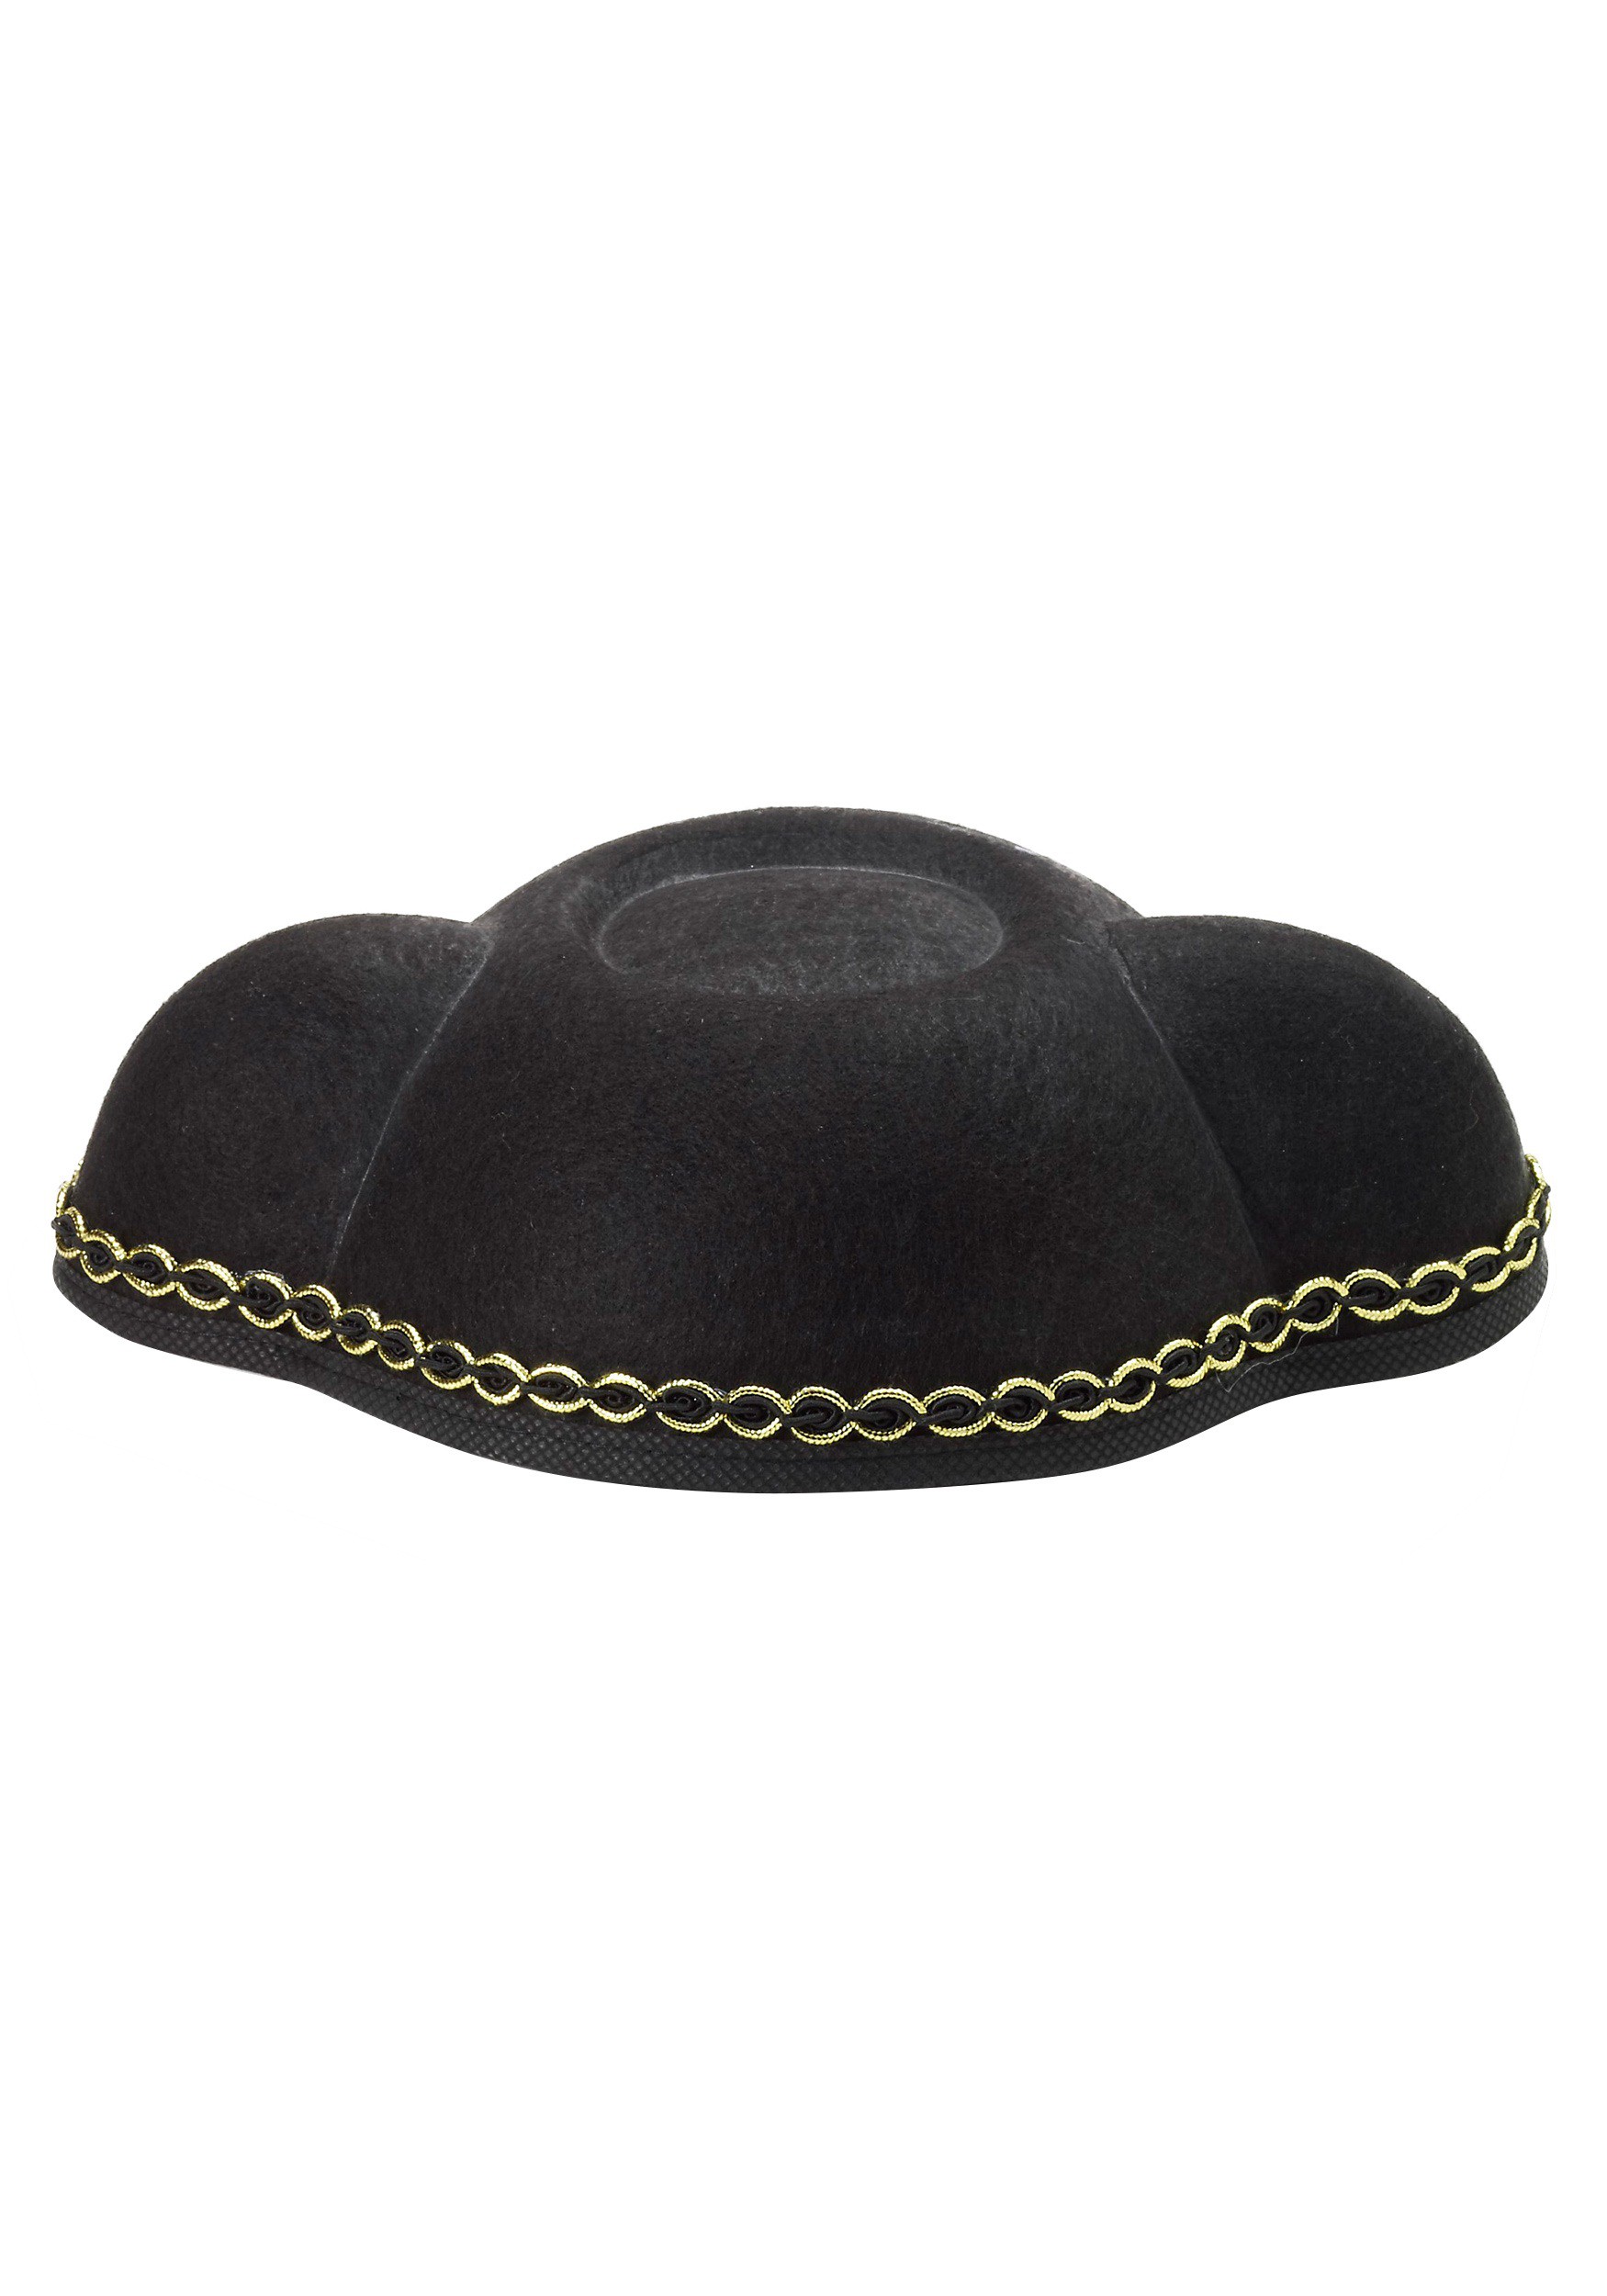 Bullfighter Black Felt Matador Steer Horn Headband Hat Costume Accessory Set 